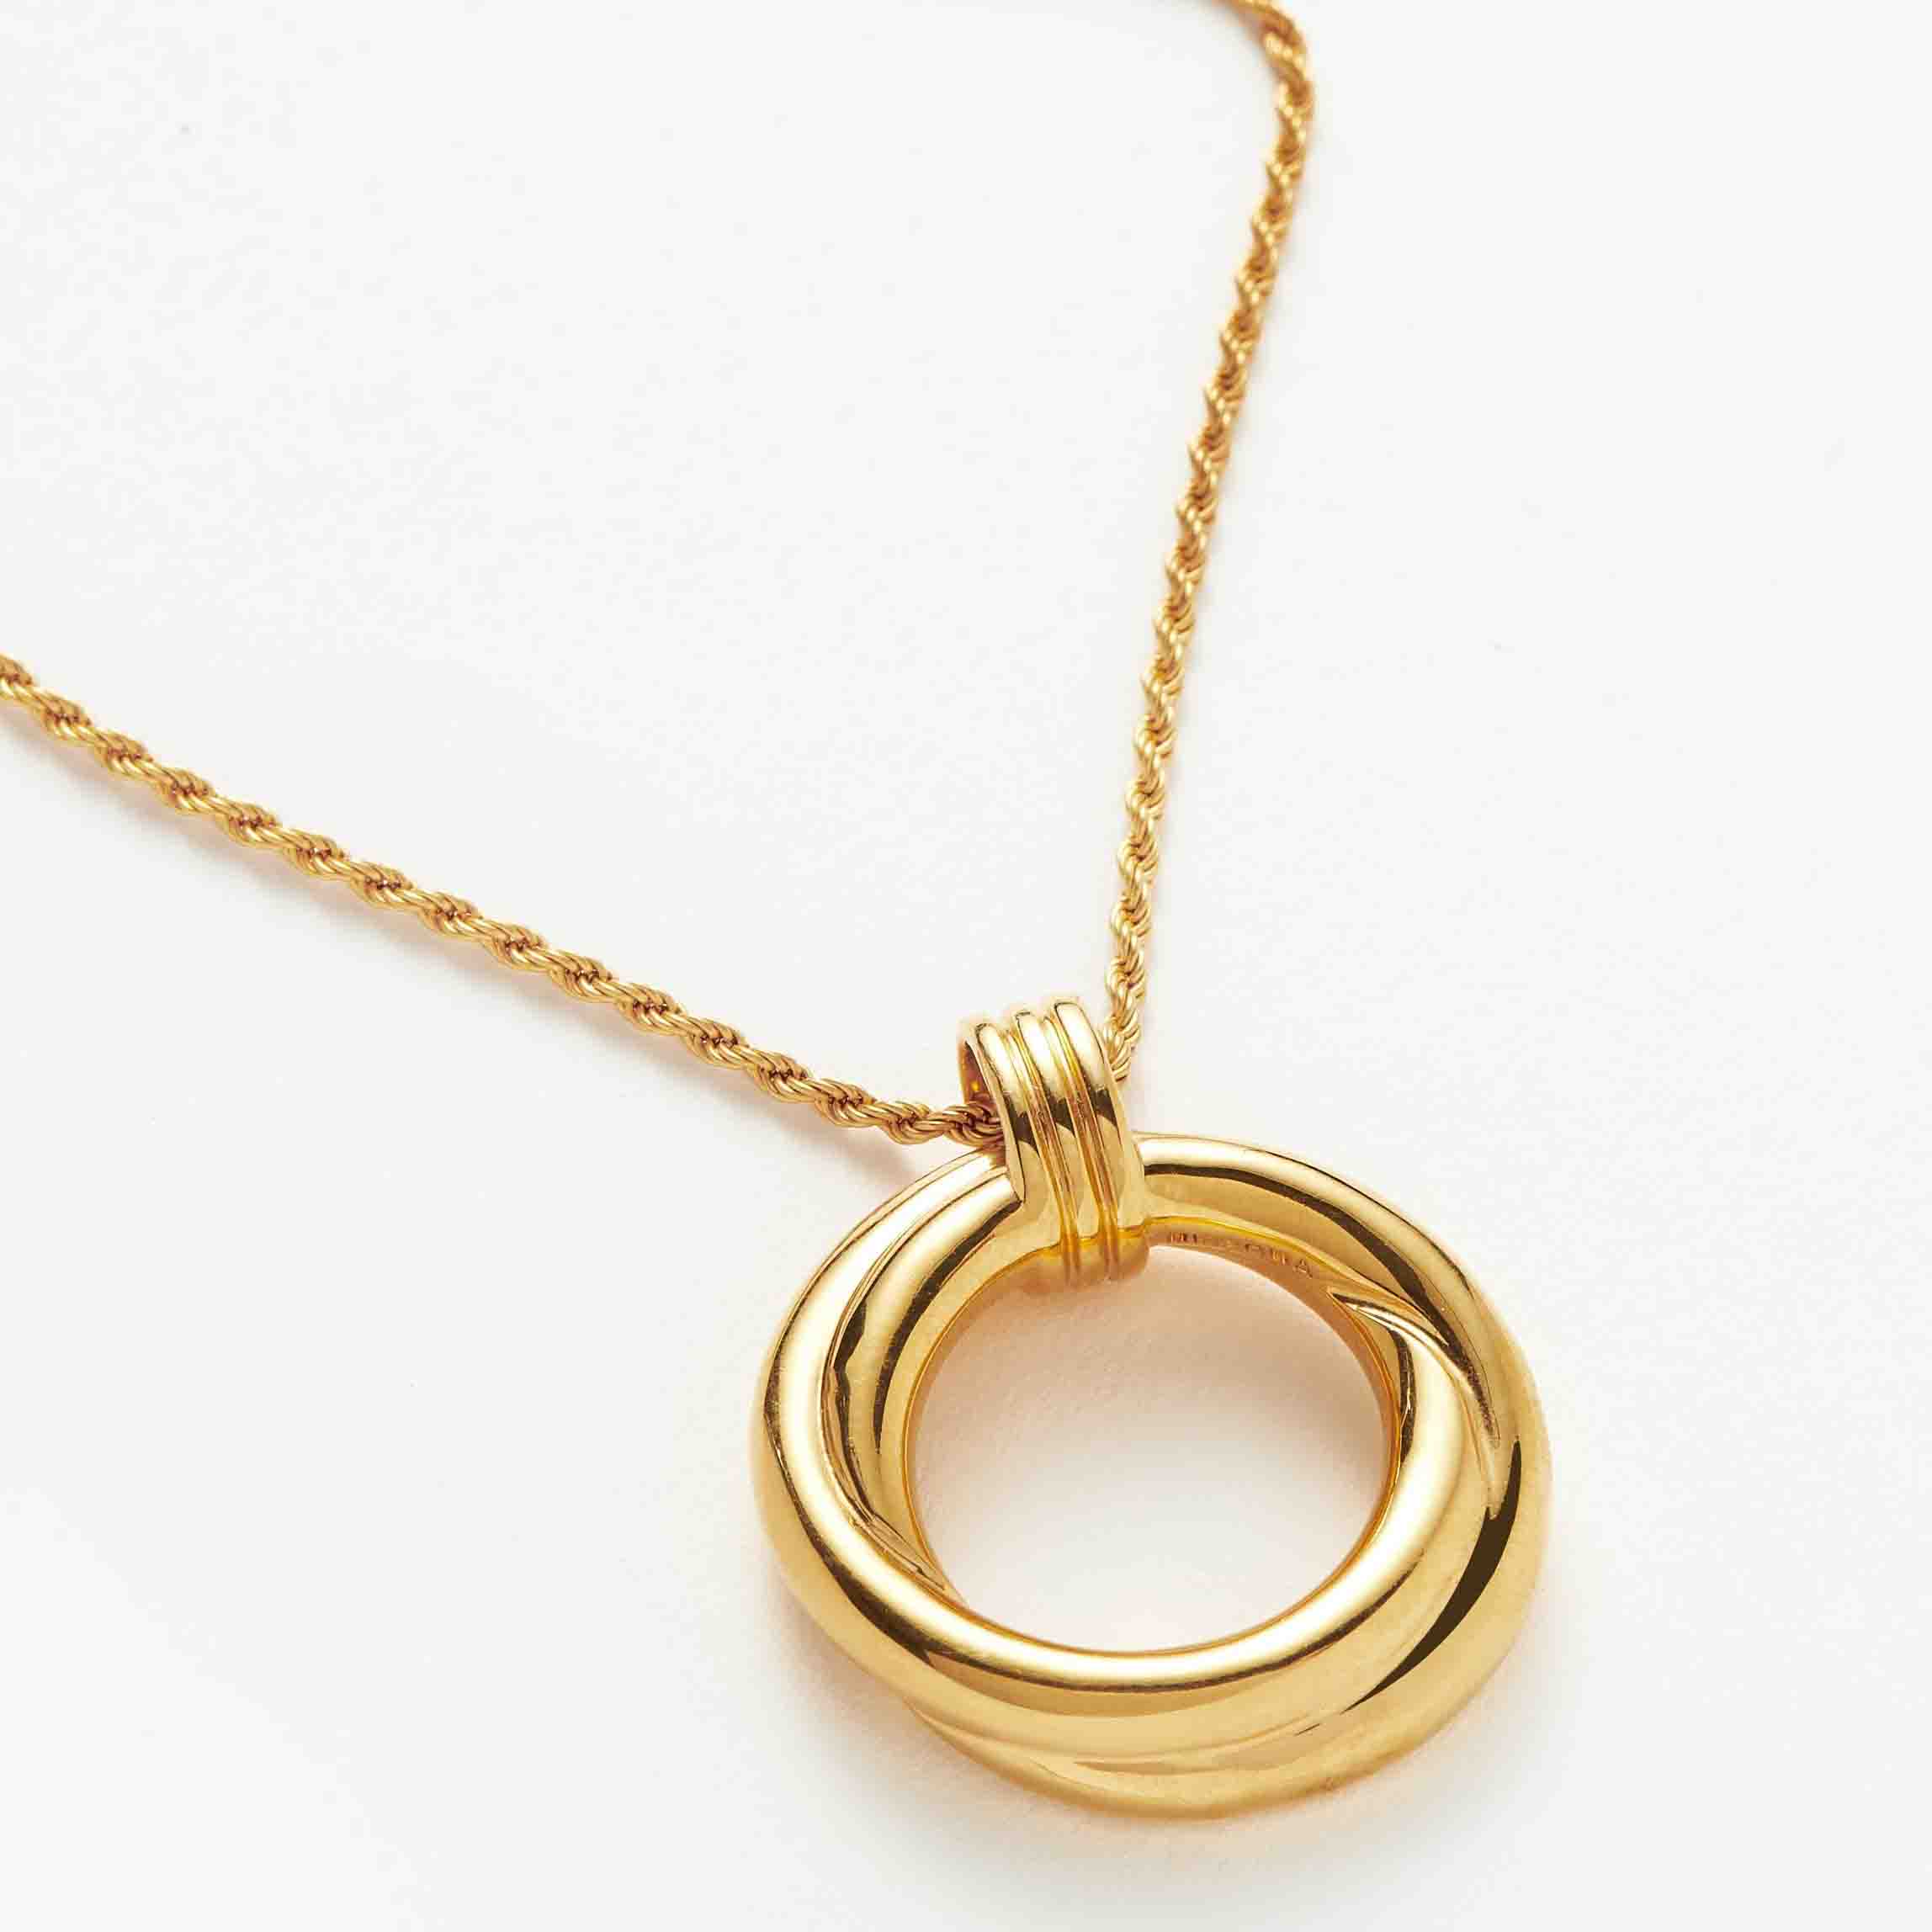 Fabricante personalizado de joyería de plata chapada en oro de 18 quilates, diseñe su propio collar entrelazado